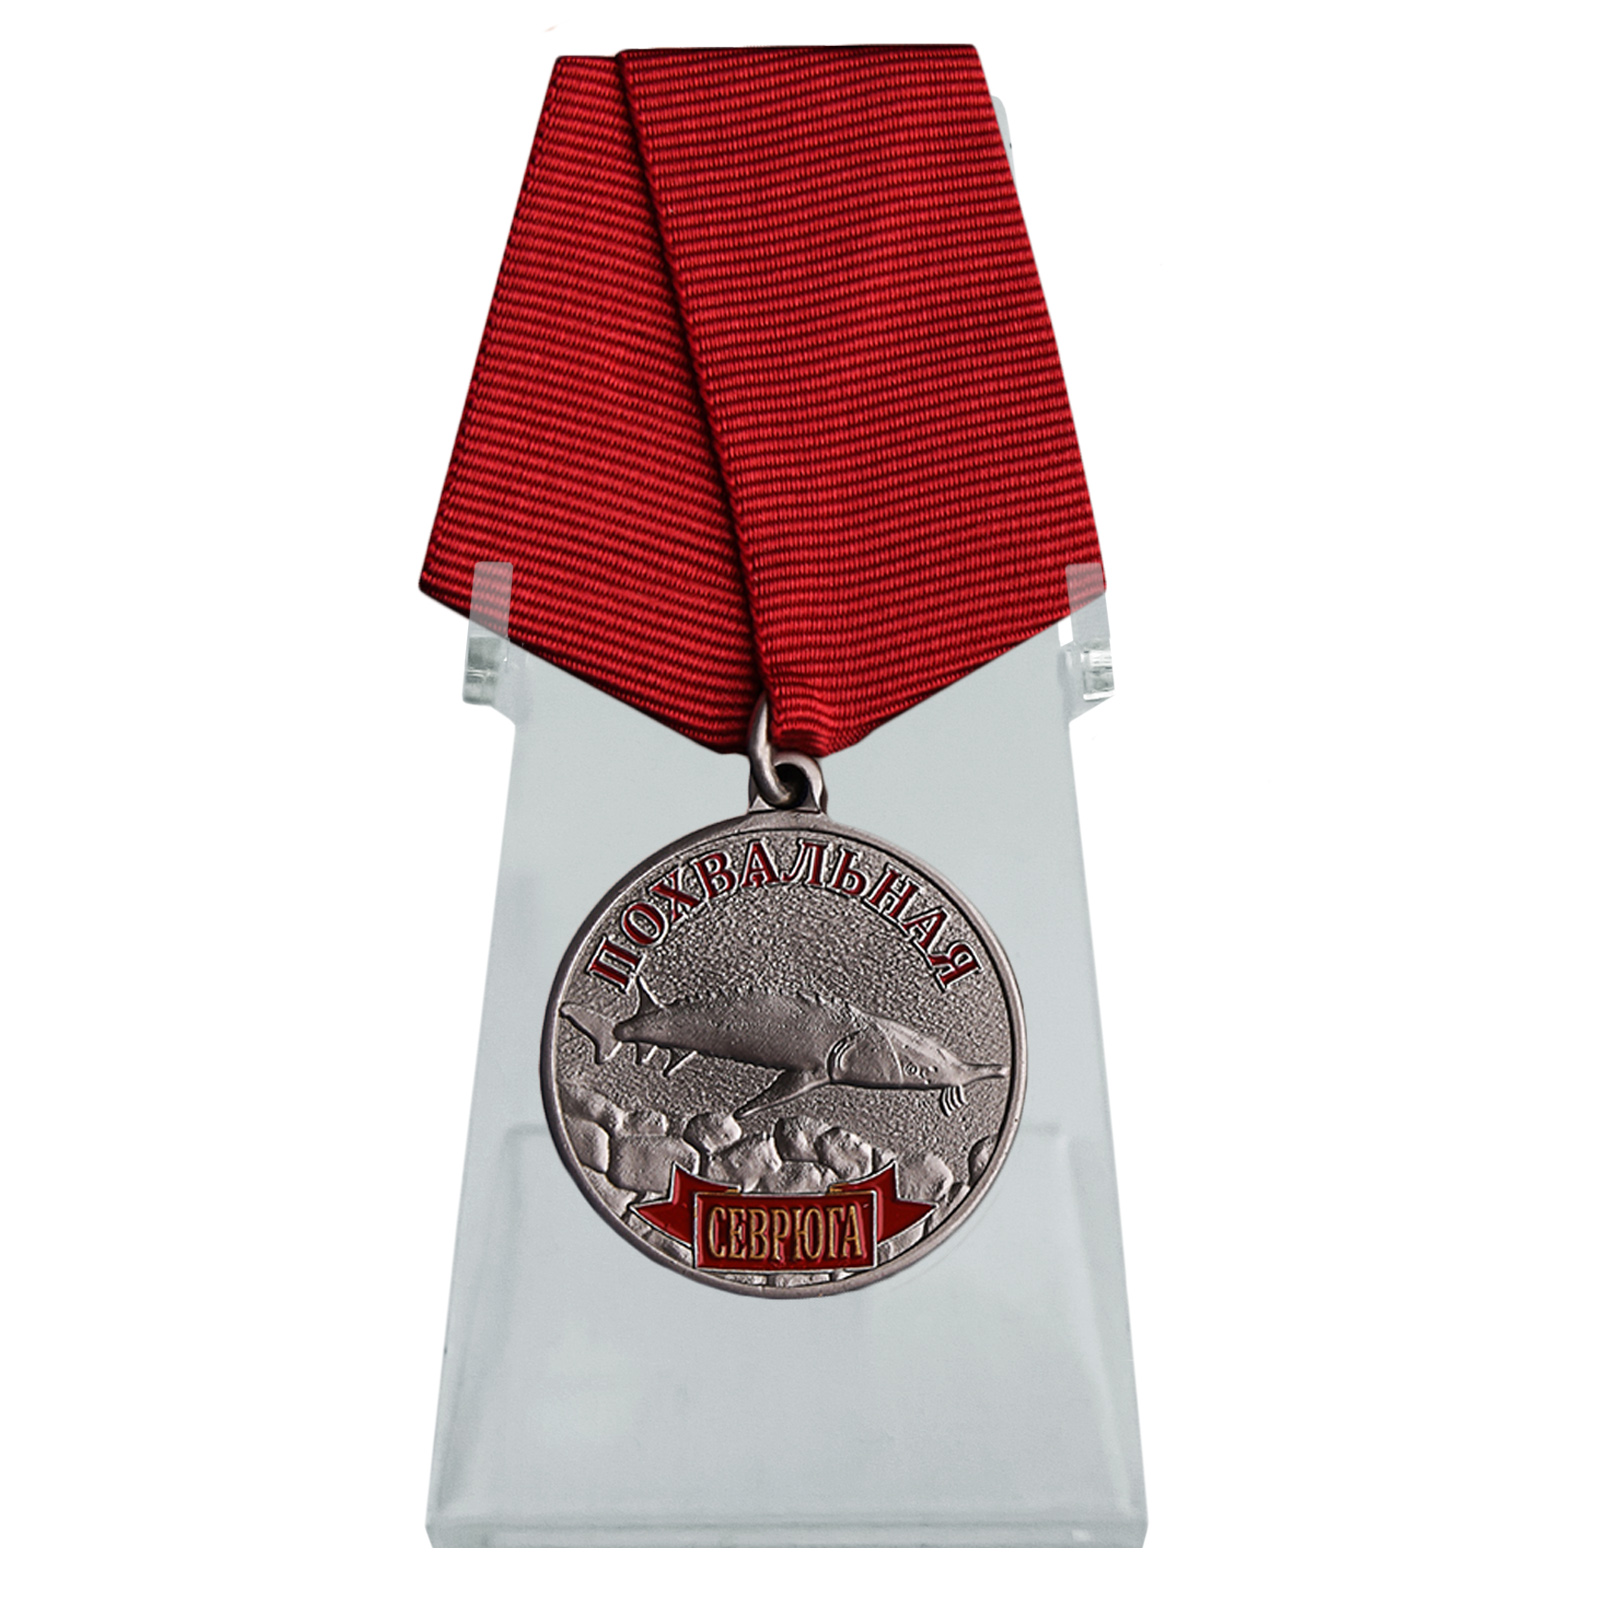 Купить медаль похвальная Севрюга на подставке онлайн в подарок